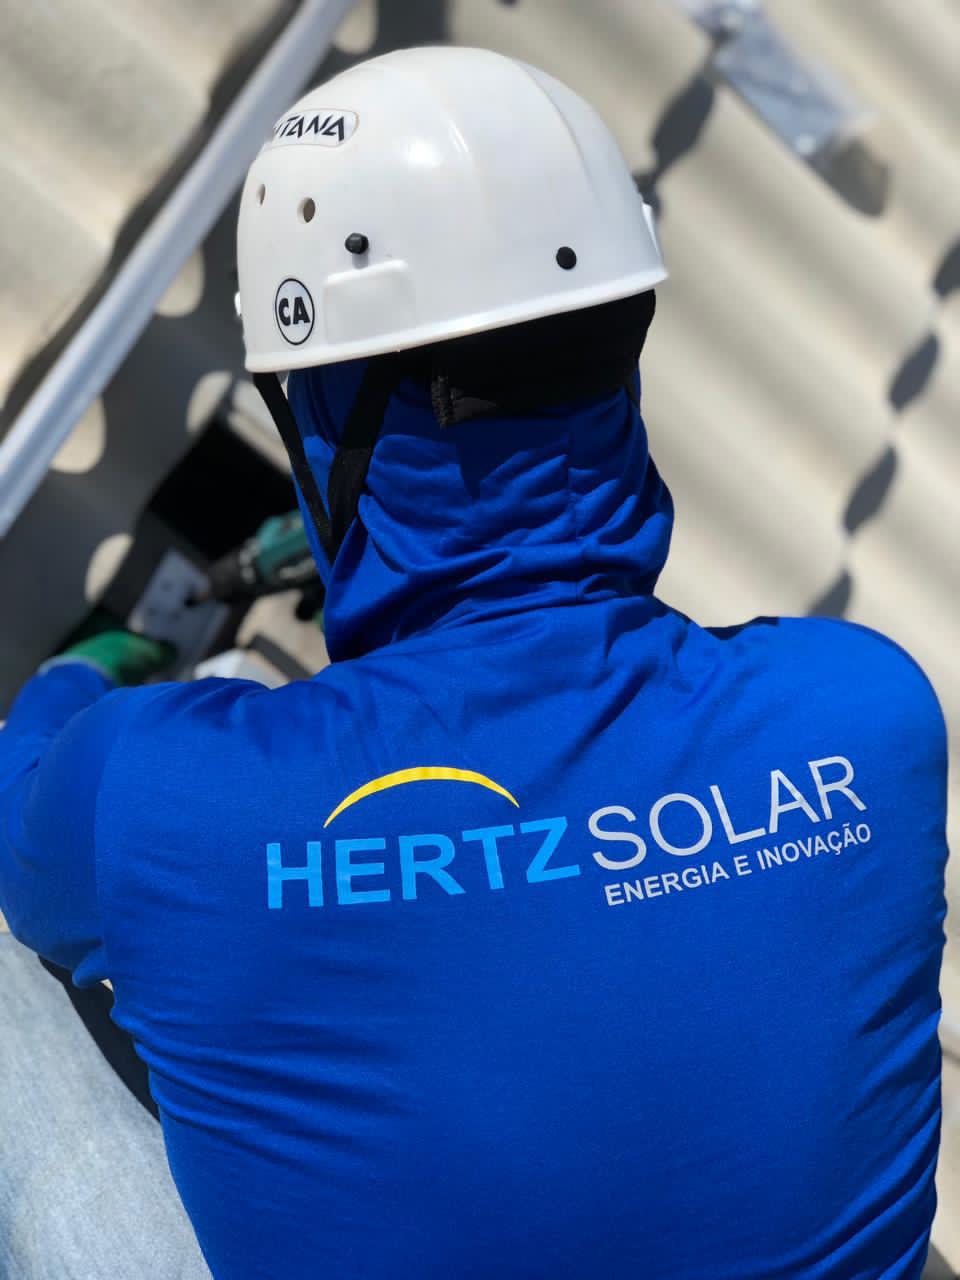 Empresa de engenharia busca representantes e profissionais para expandir mercado de energia solar na Bahia